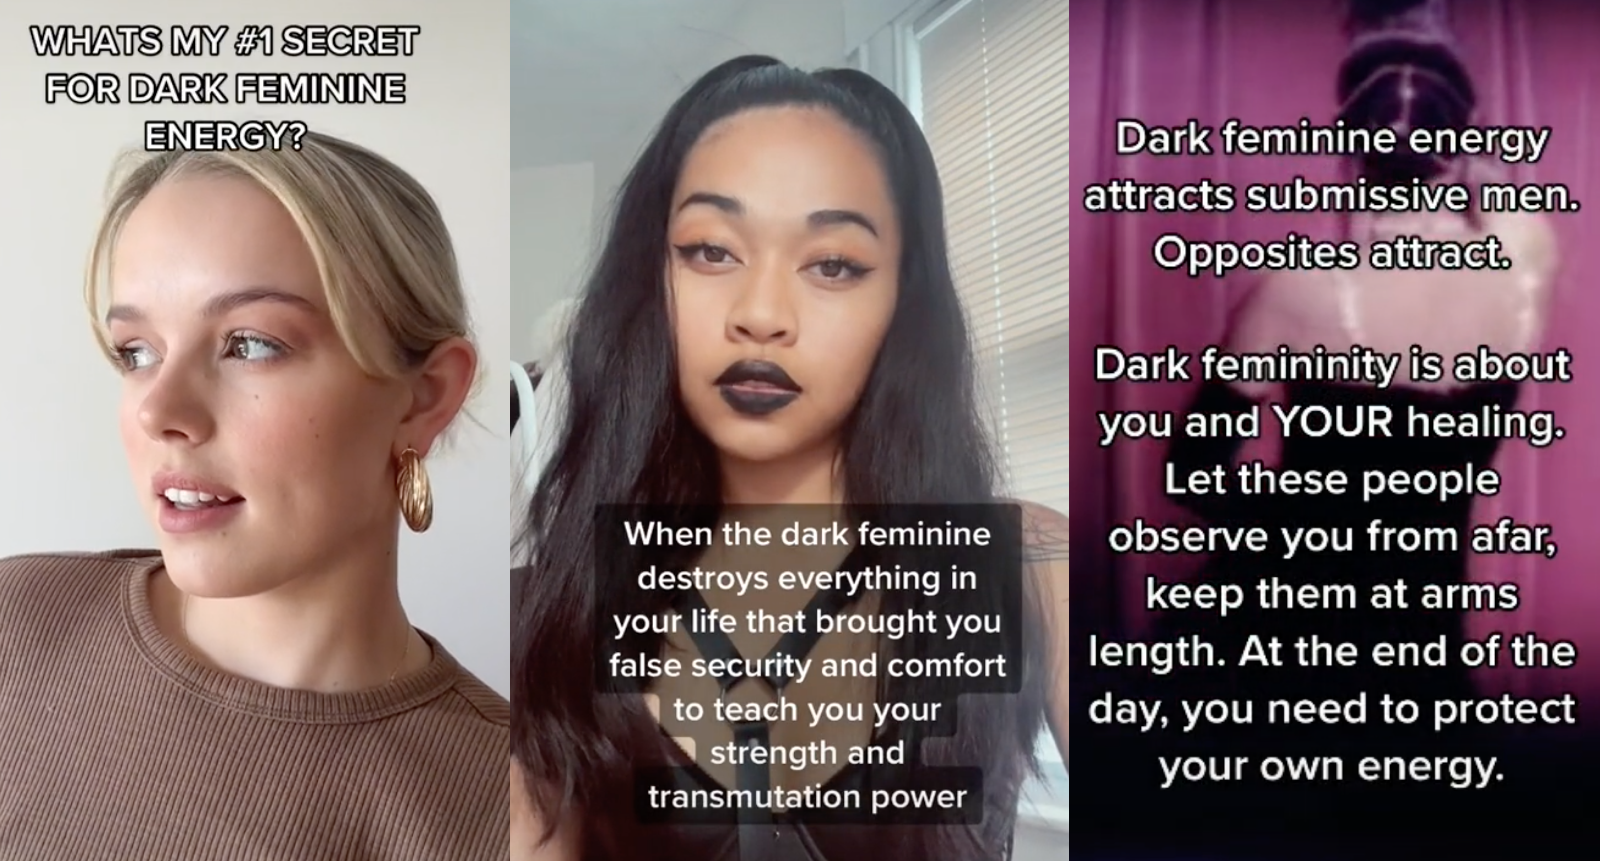 https://video-images.vice.com/articles/62d67496ecf922009466f29a/lede/1658221985146-dark-feminine-energy.png